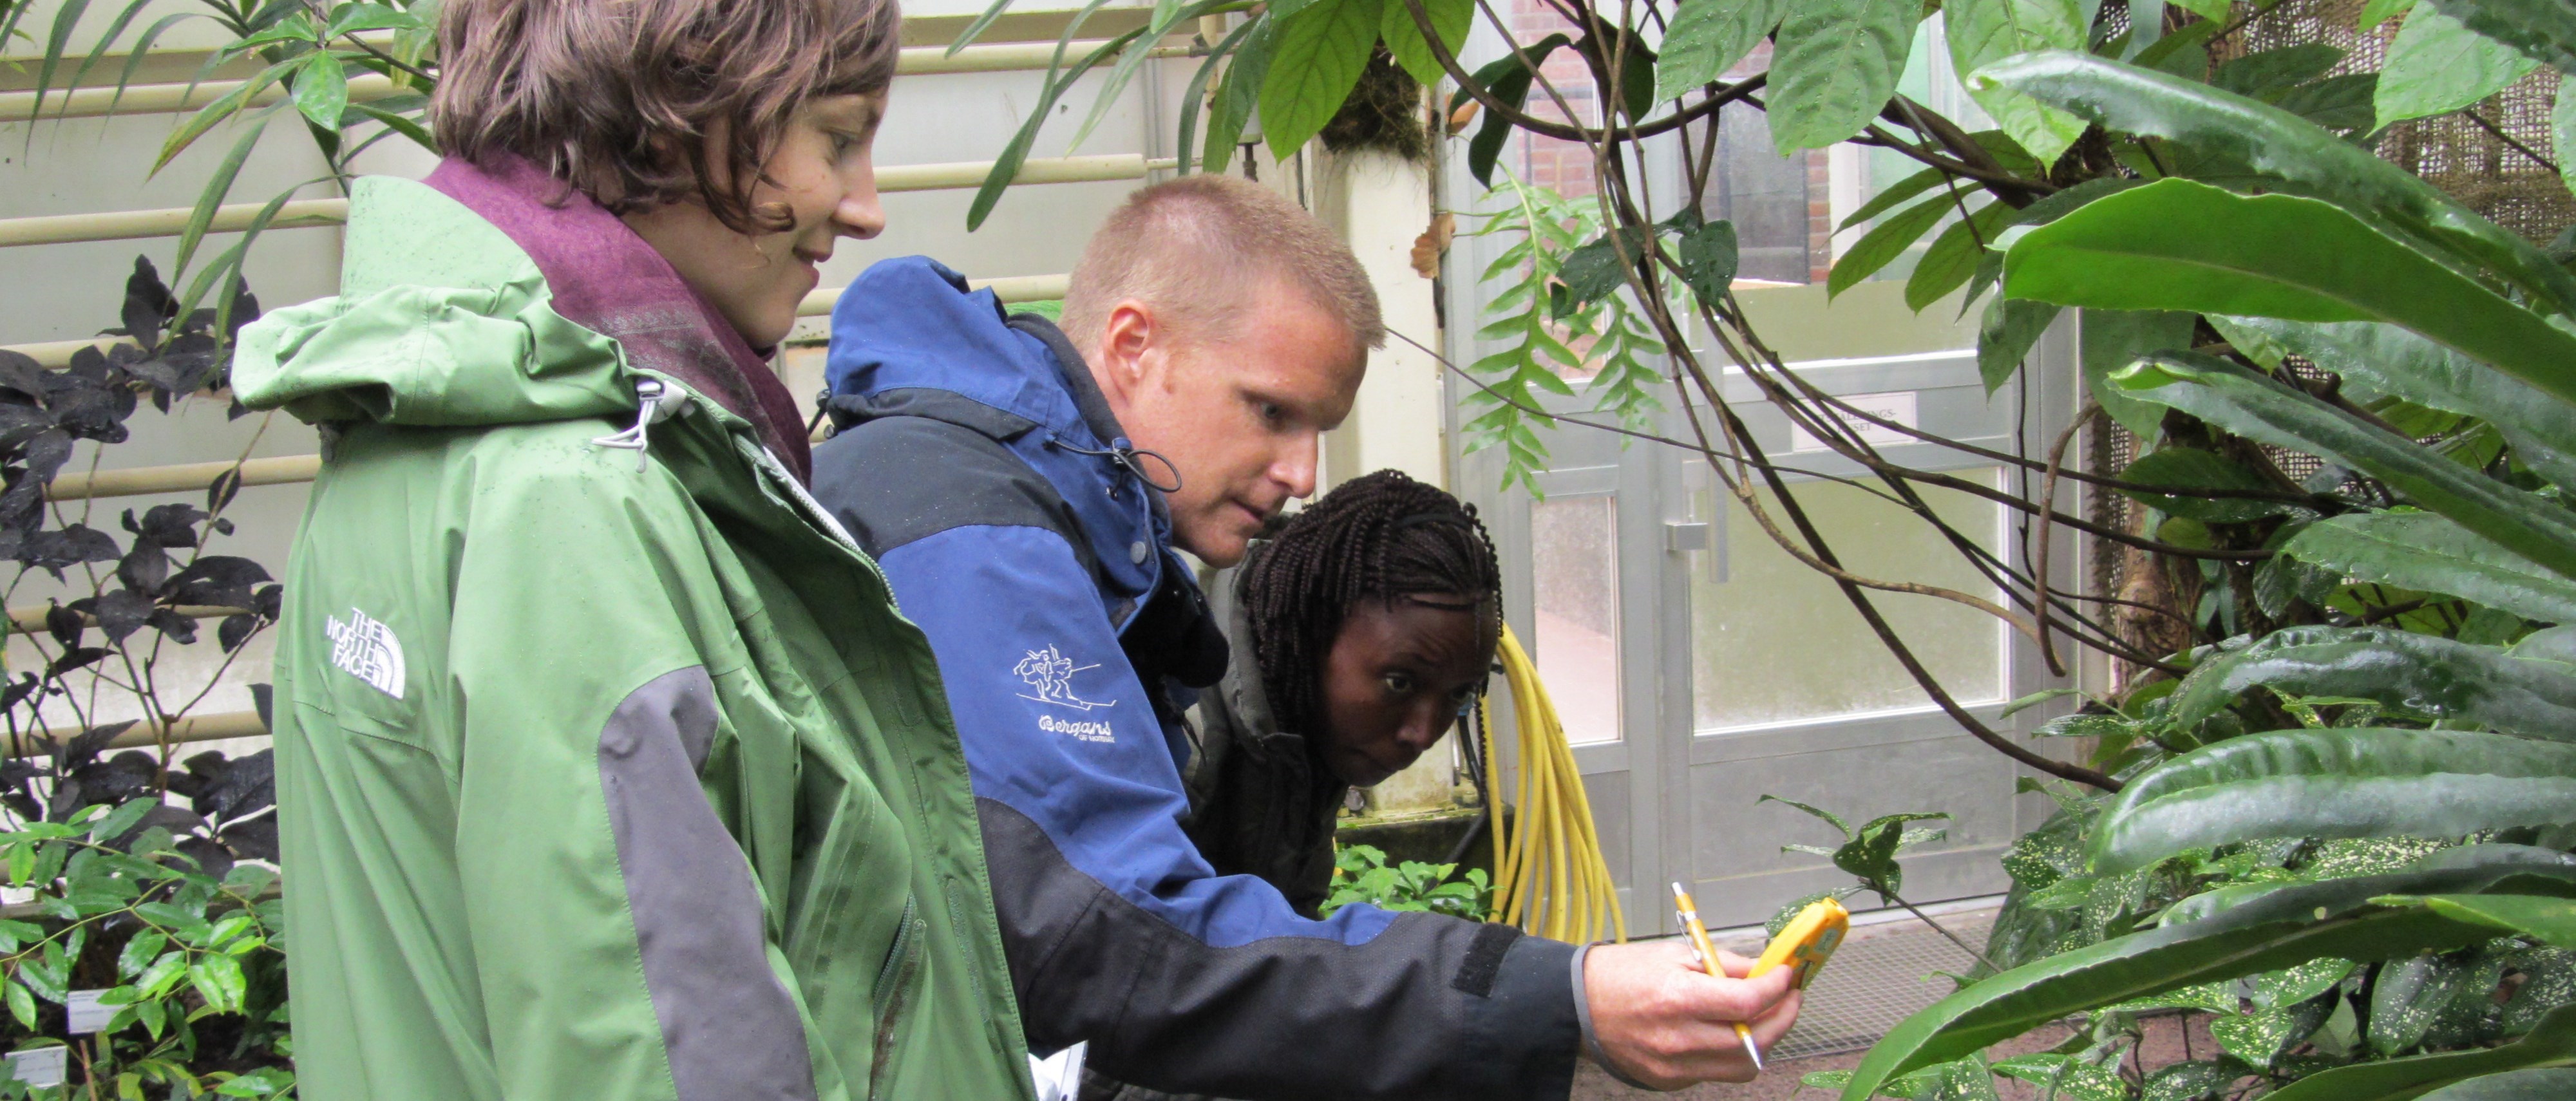 Studenter studerar växter i växthuset